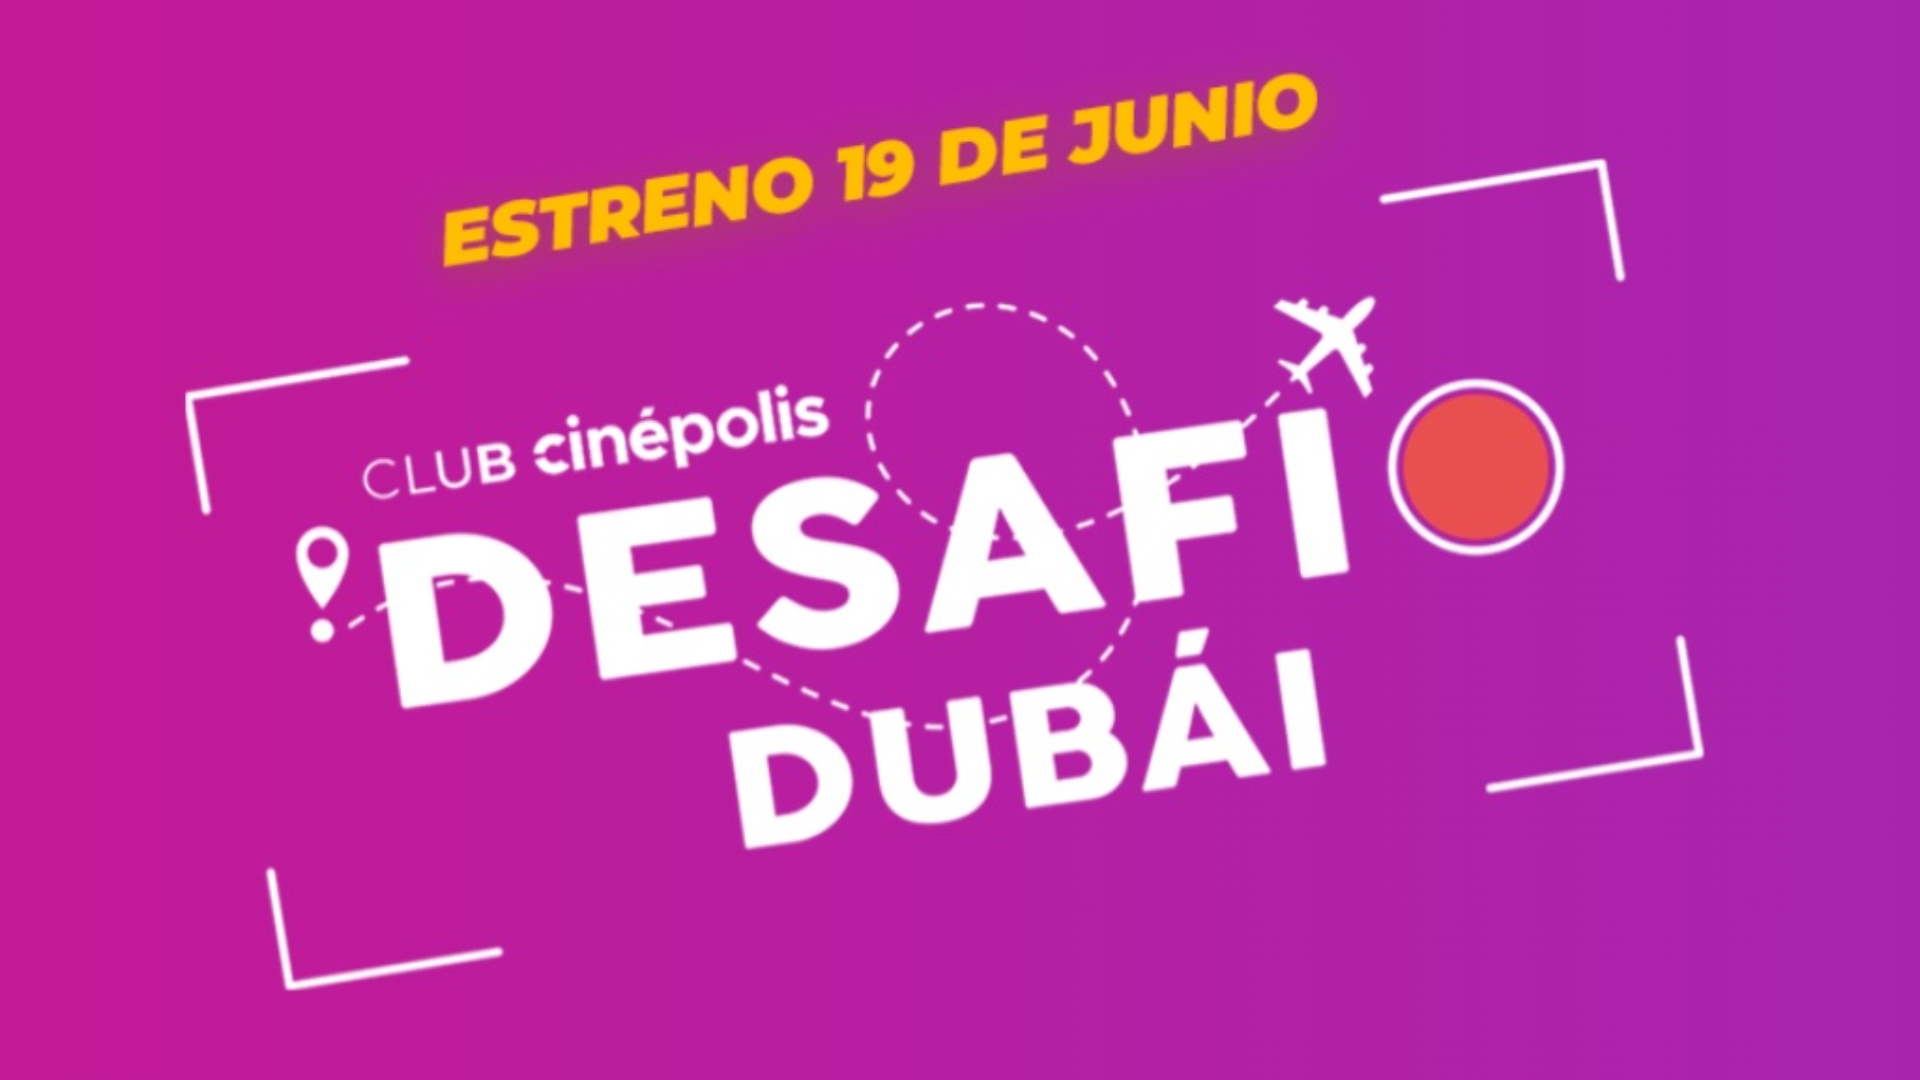 Club Cinépolis Desafío Dubái 19 de junio estreno